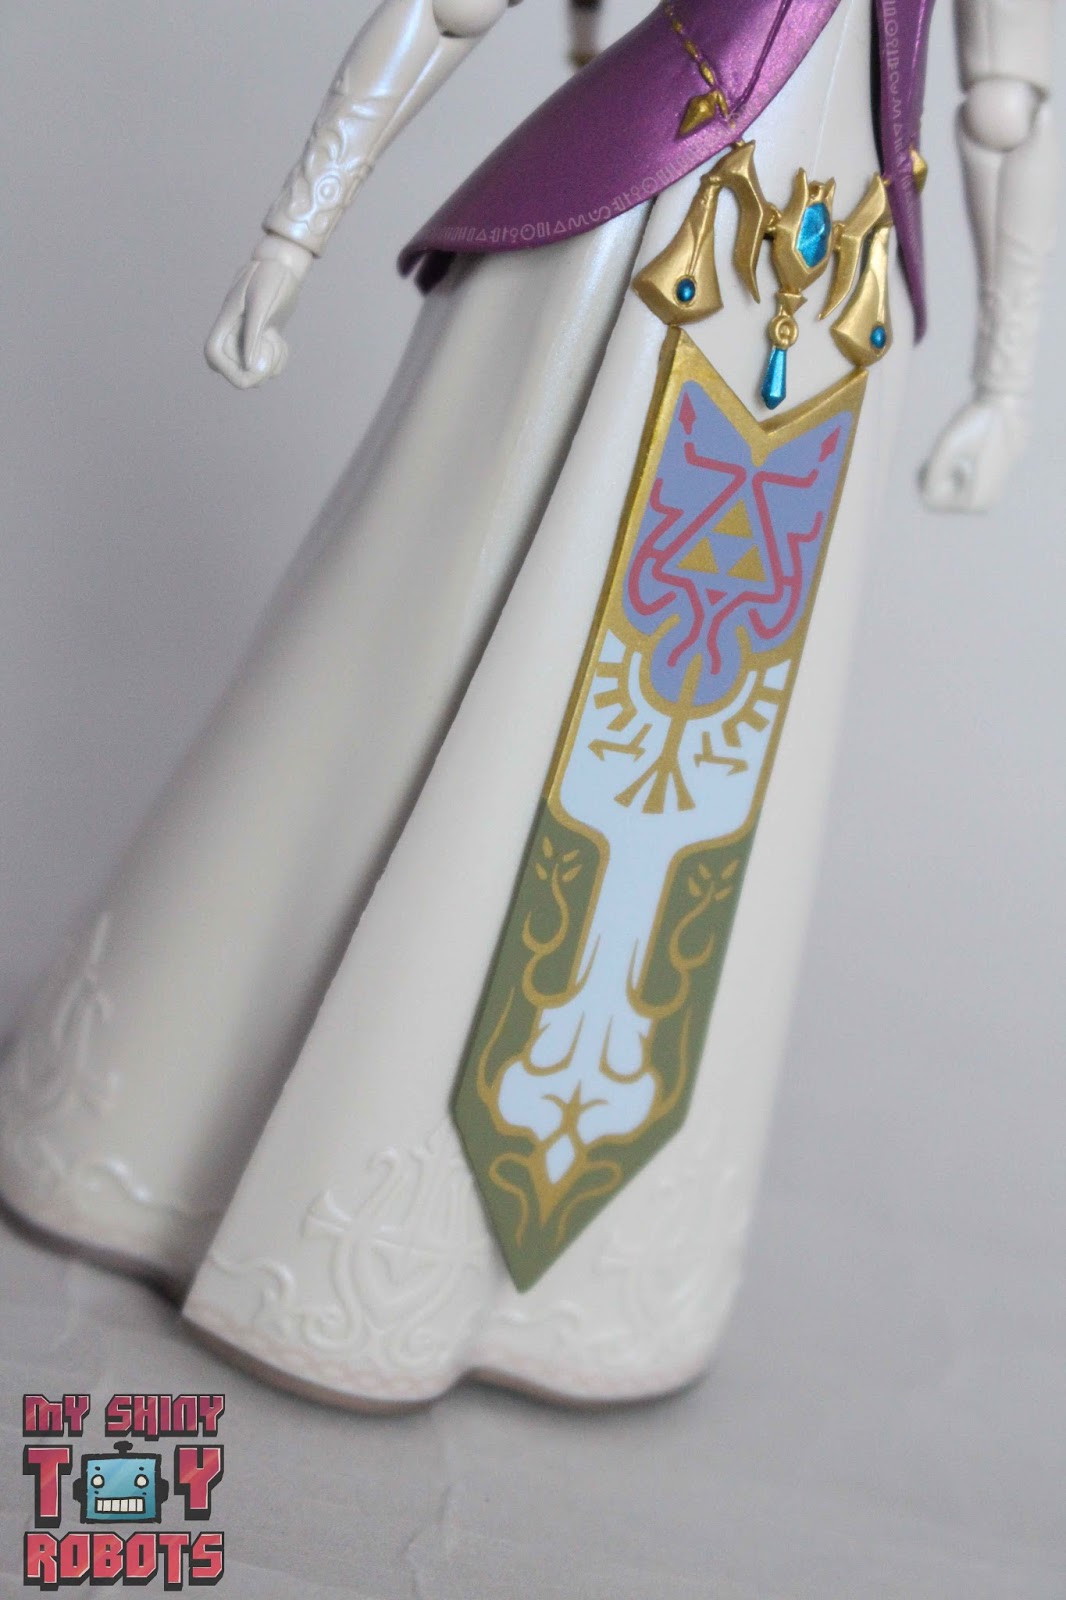 My Shiny Toy Robots: Toybox REVIEW: Figma Zelda Twilight Princess Ver.